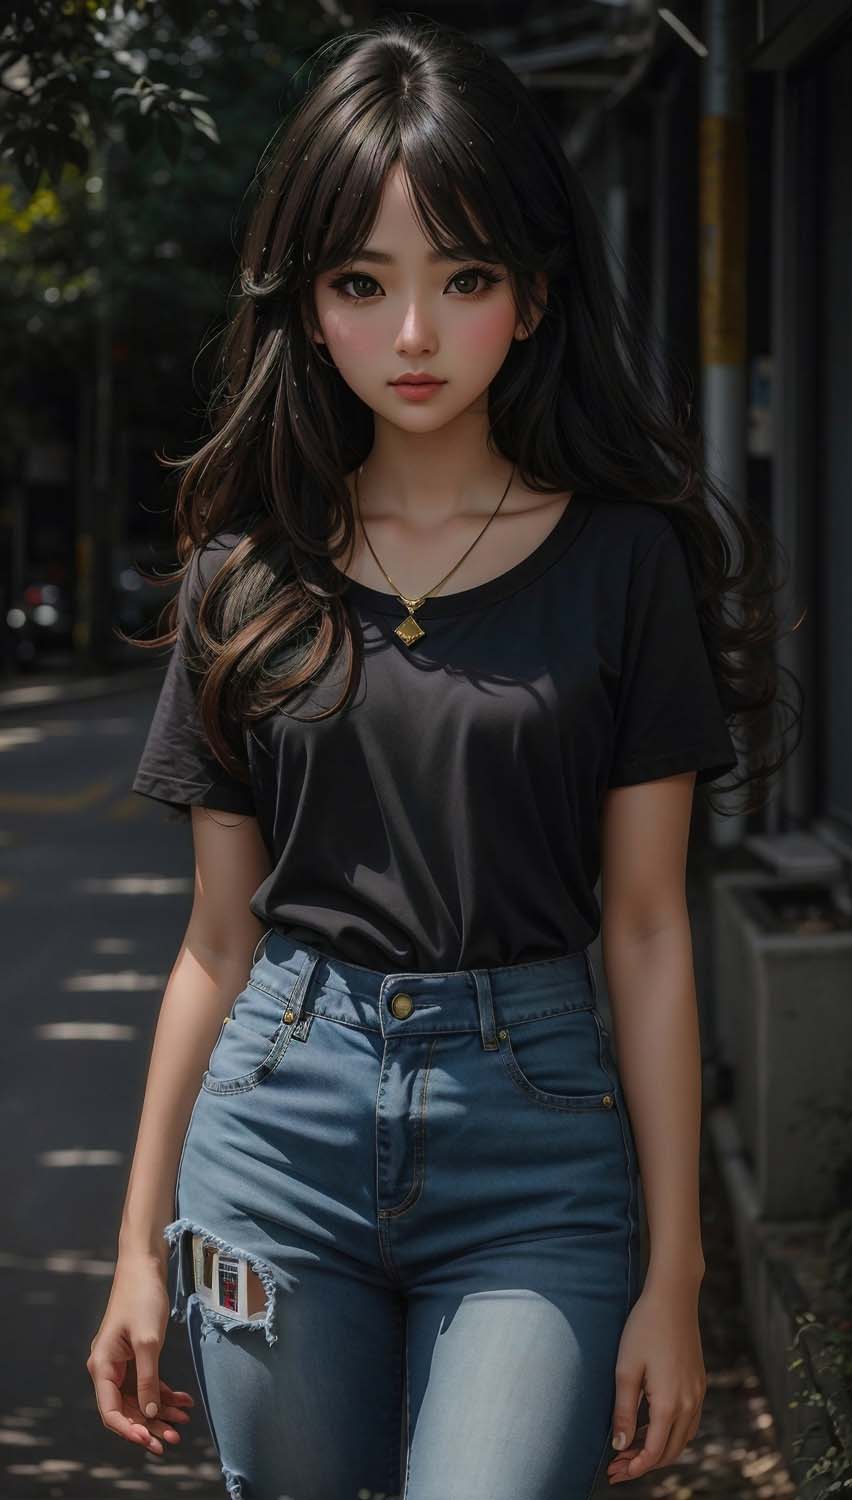 Beautiful Girl Jeans Black Tops iPhone Wallpaper 4K